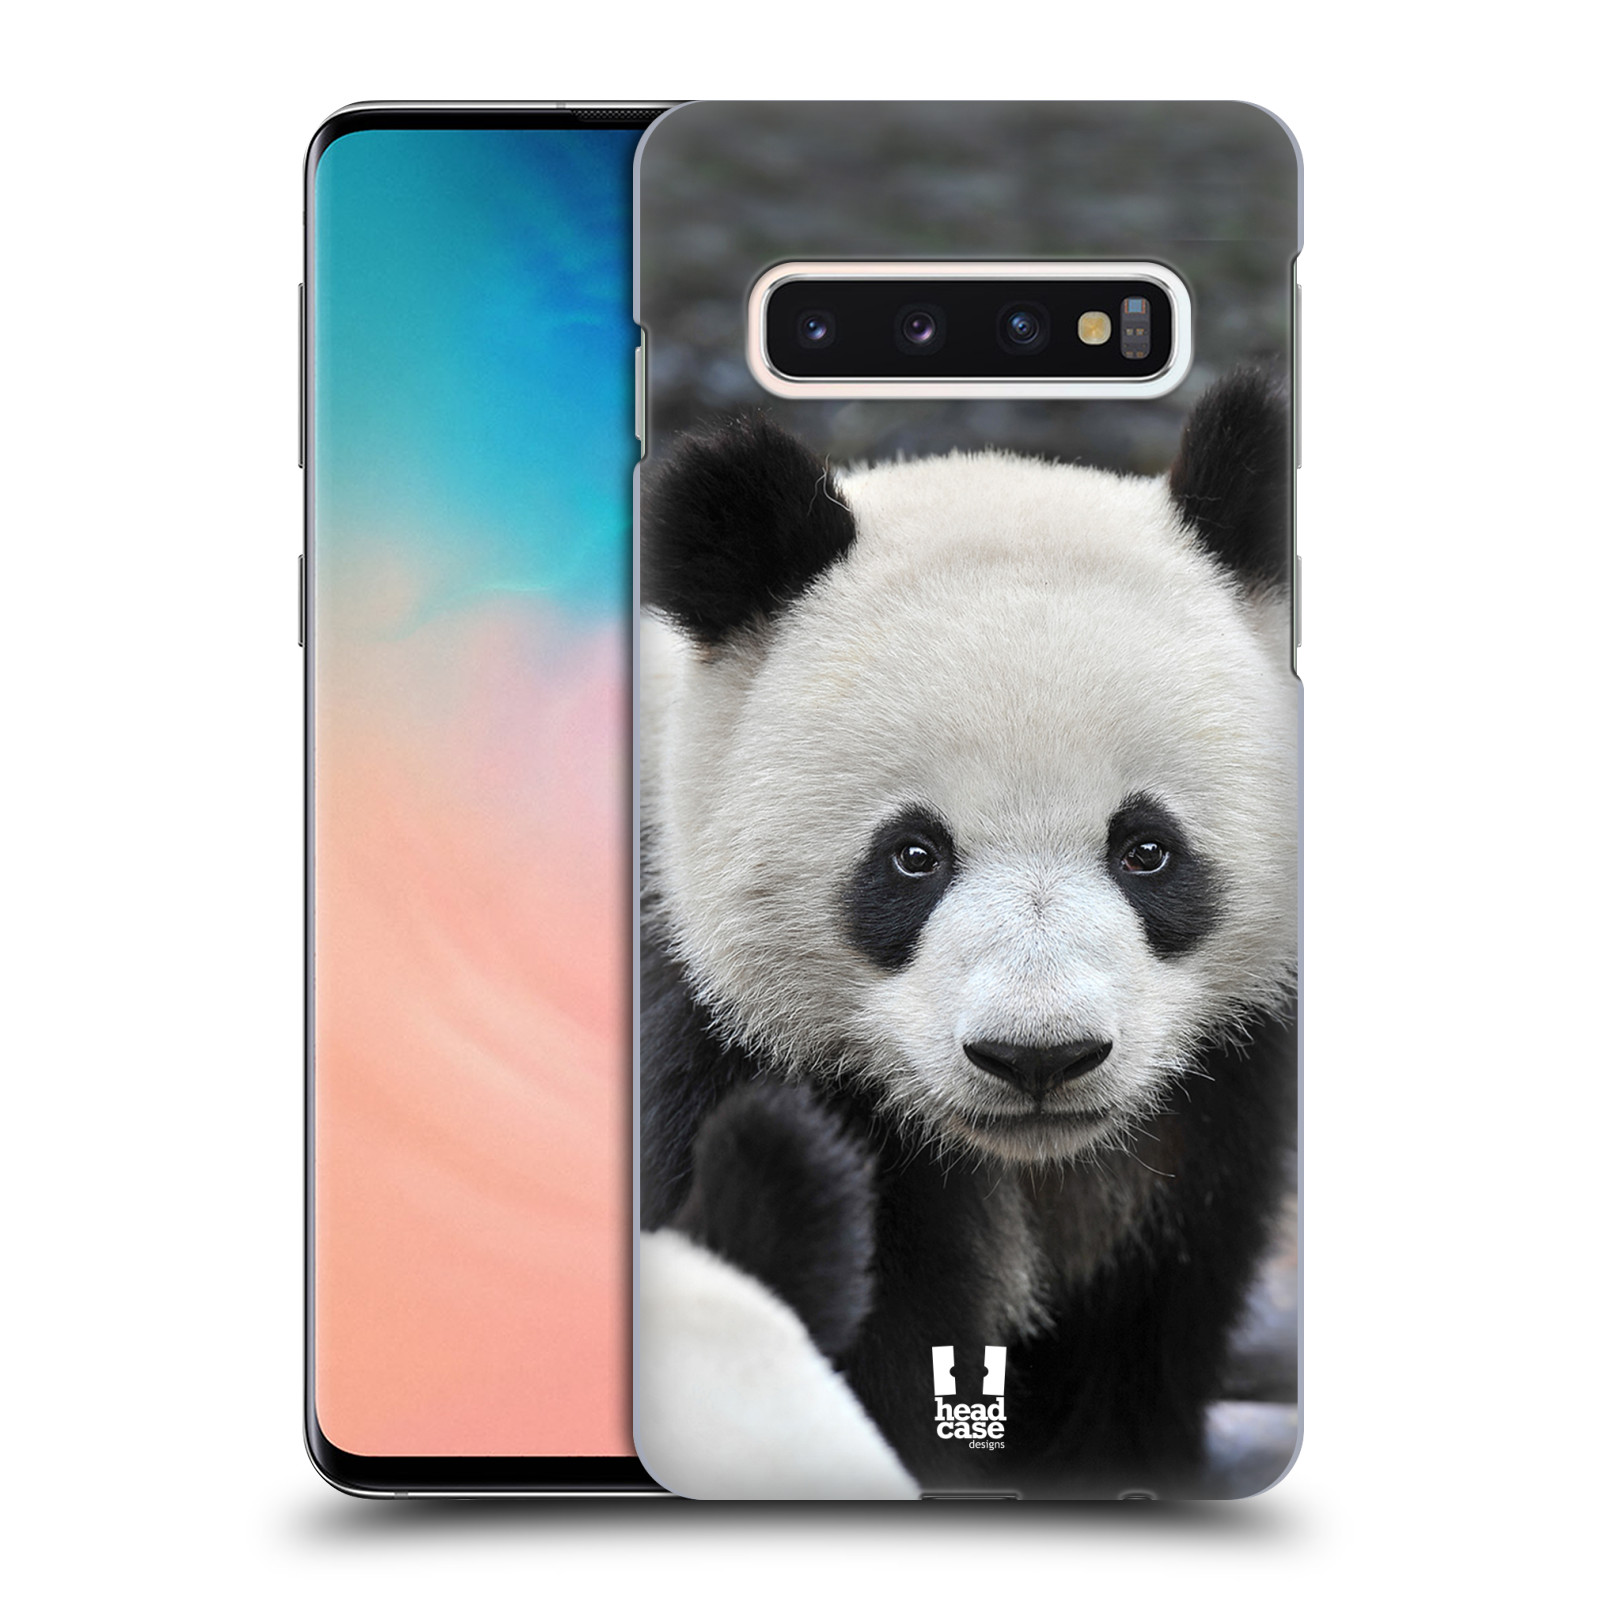 Zadní obal pro mobil Samsung Galaxy S10 - HEAD CASE - Svět zvířat medvěd panda